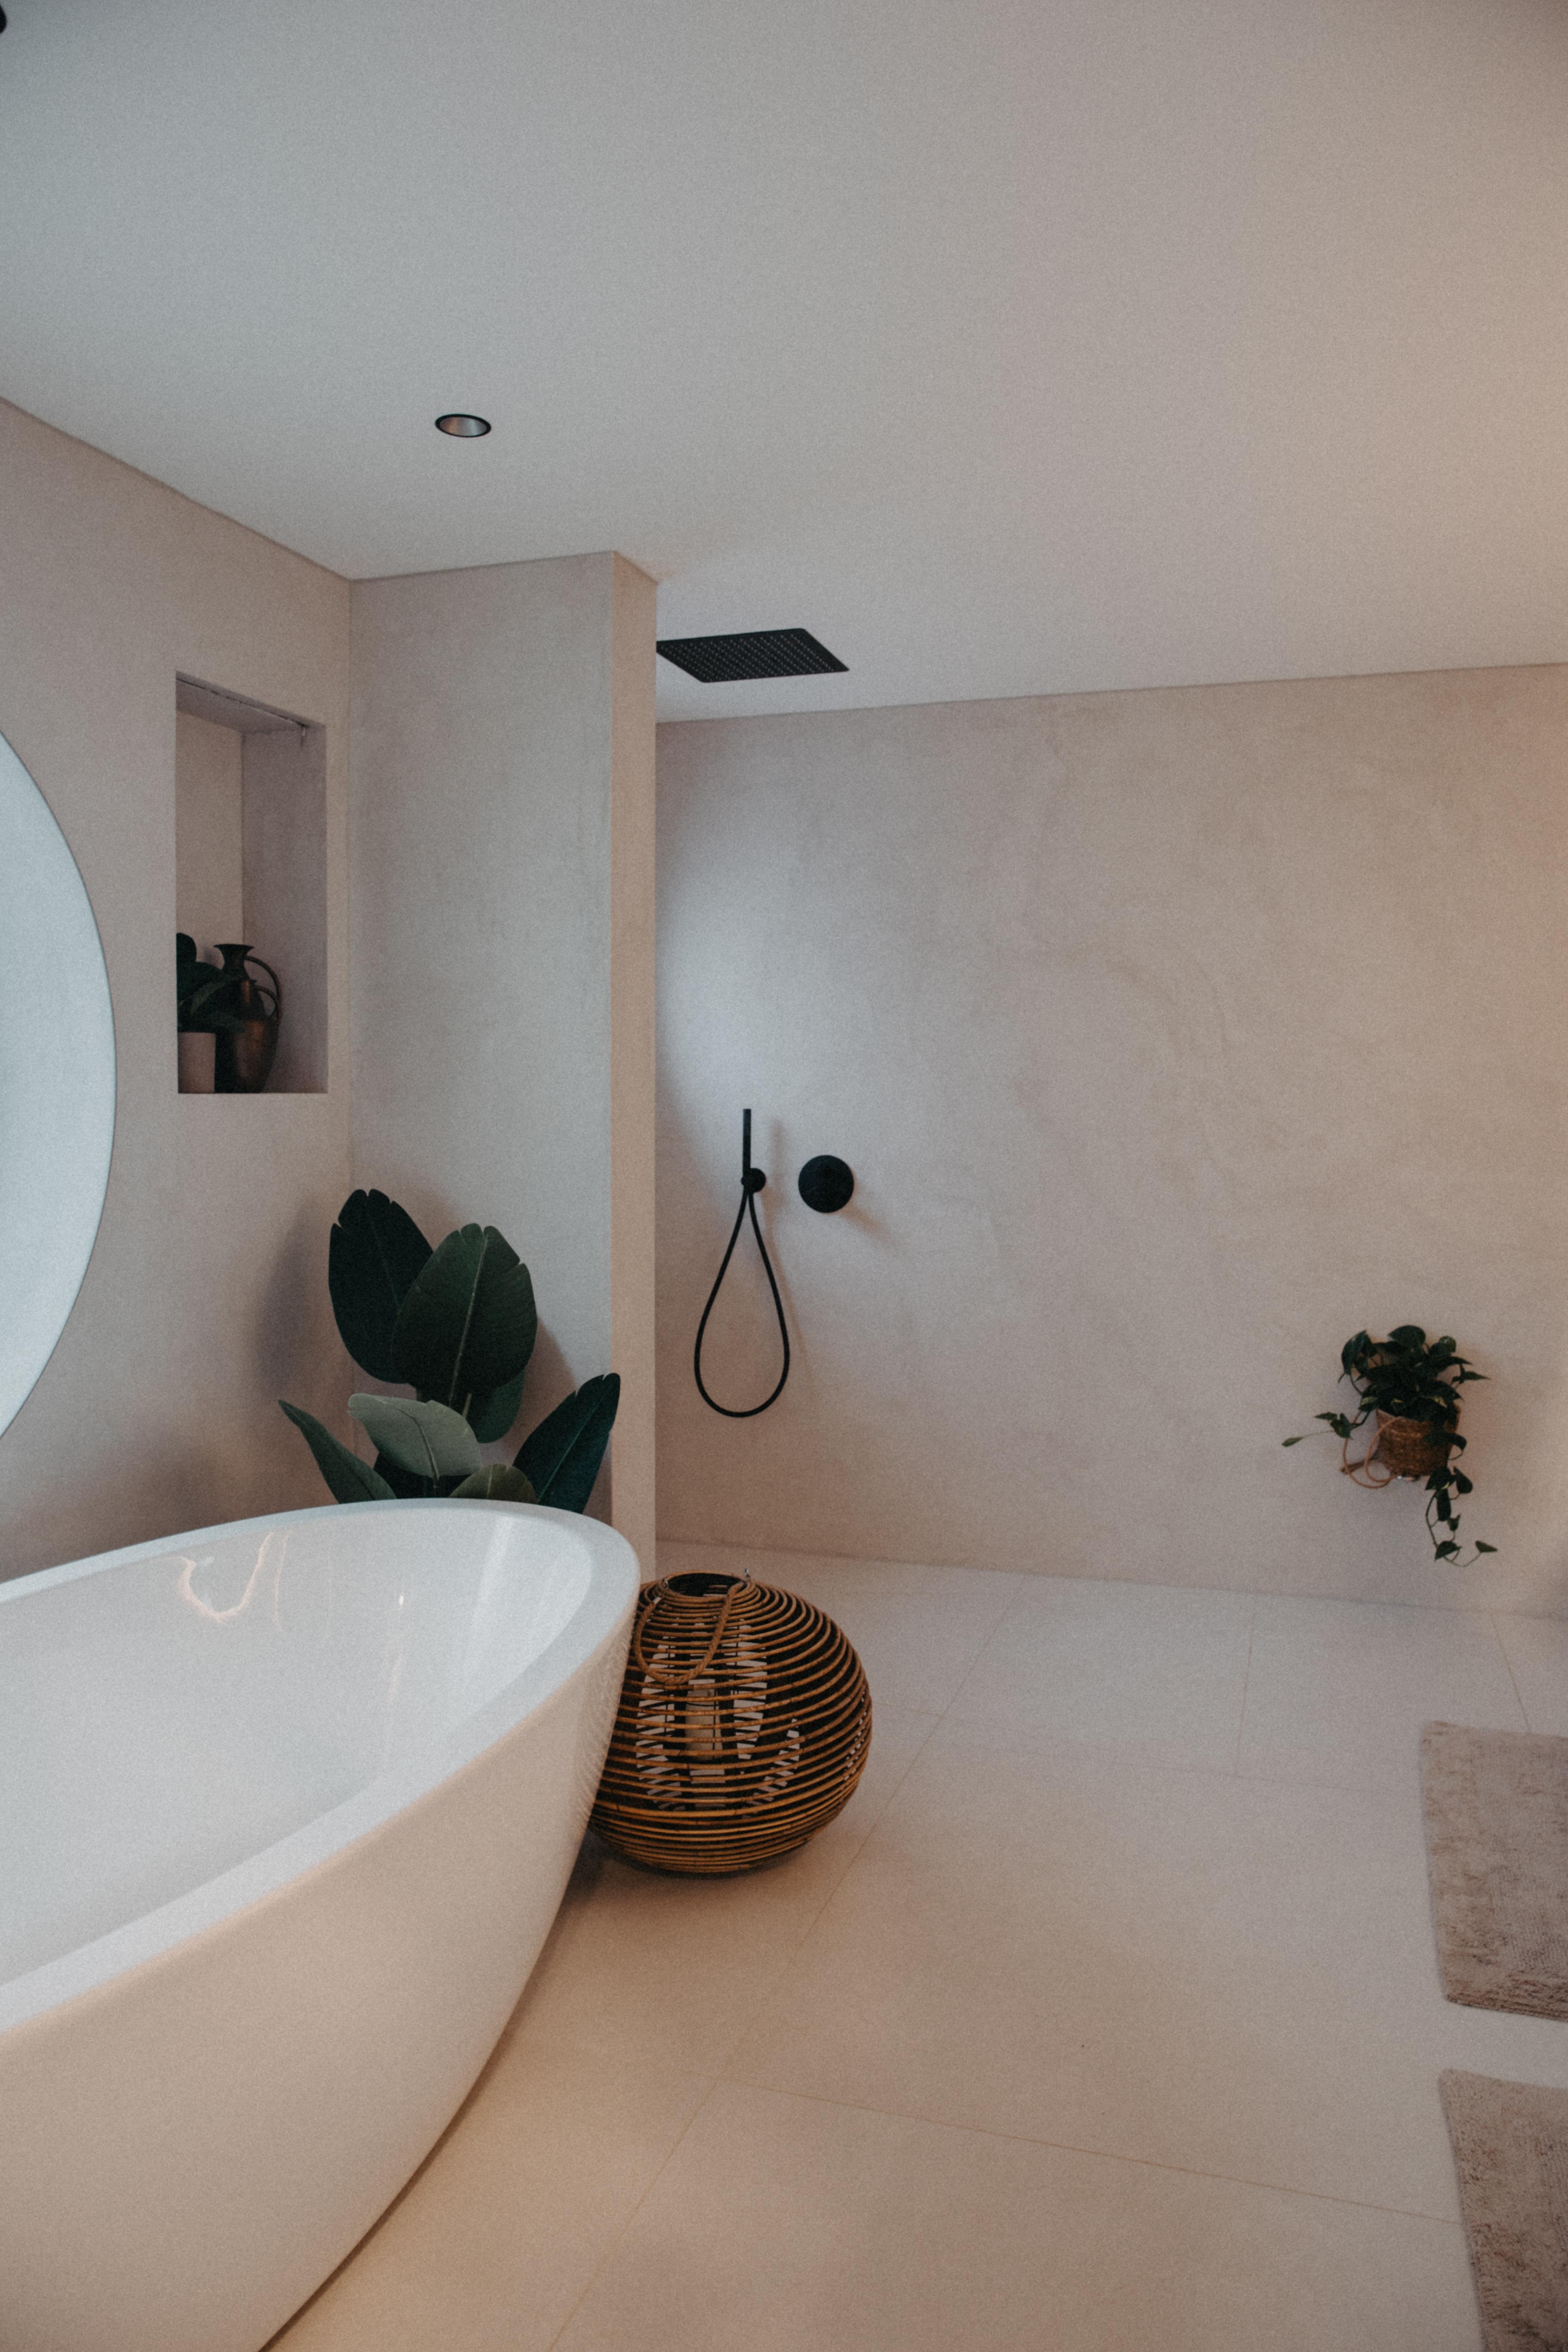 Unser Badezimmer 🤍
#badezimmer #renovieren #sanieren 